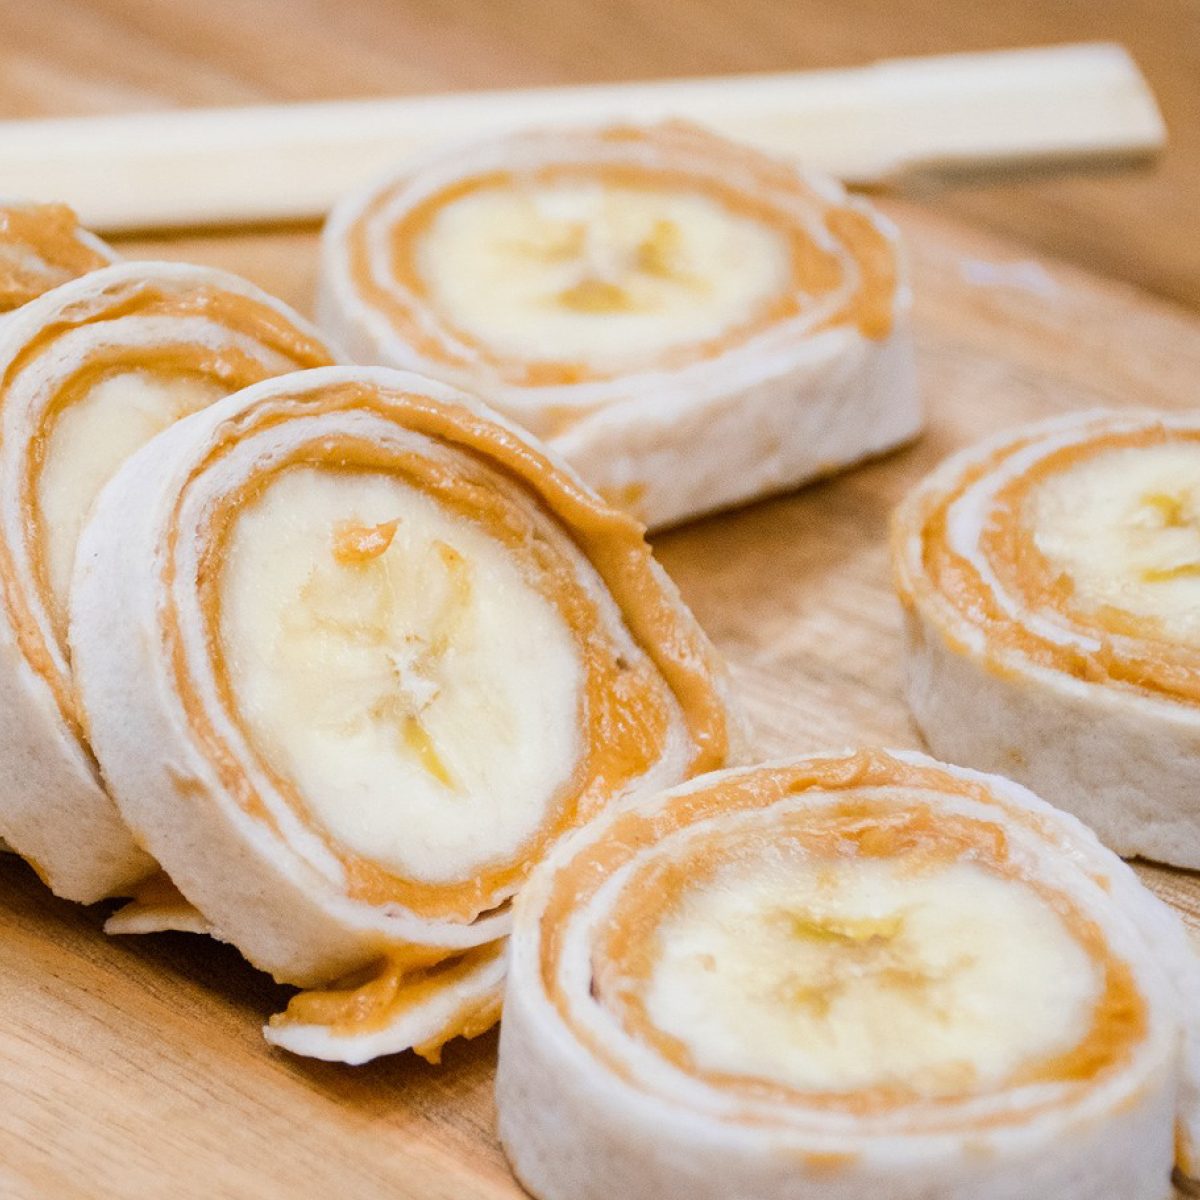 Samurai Banana Sushi Roll